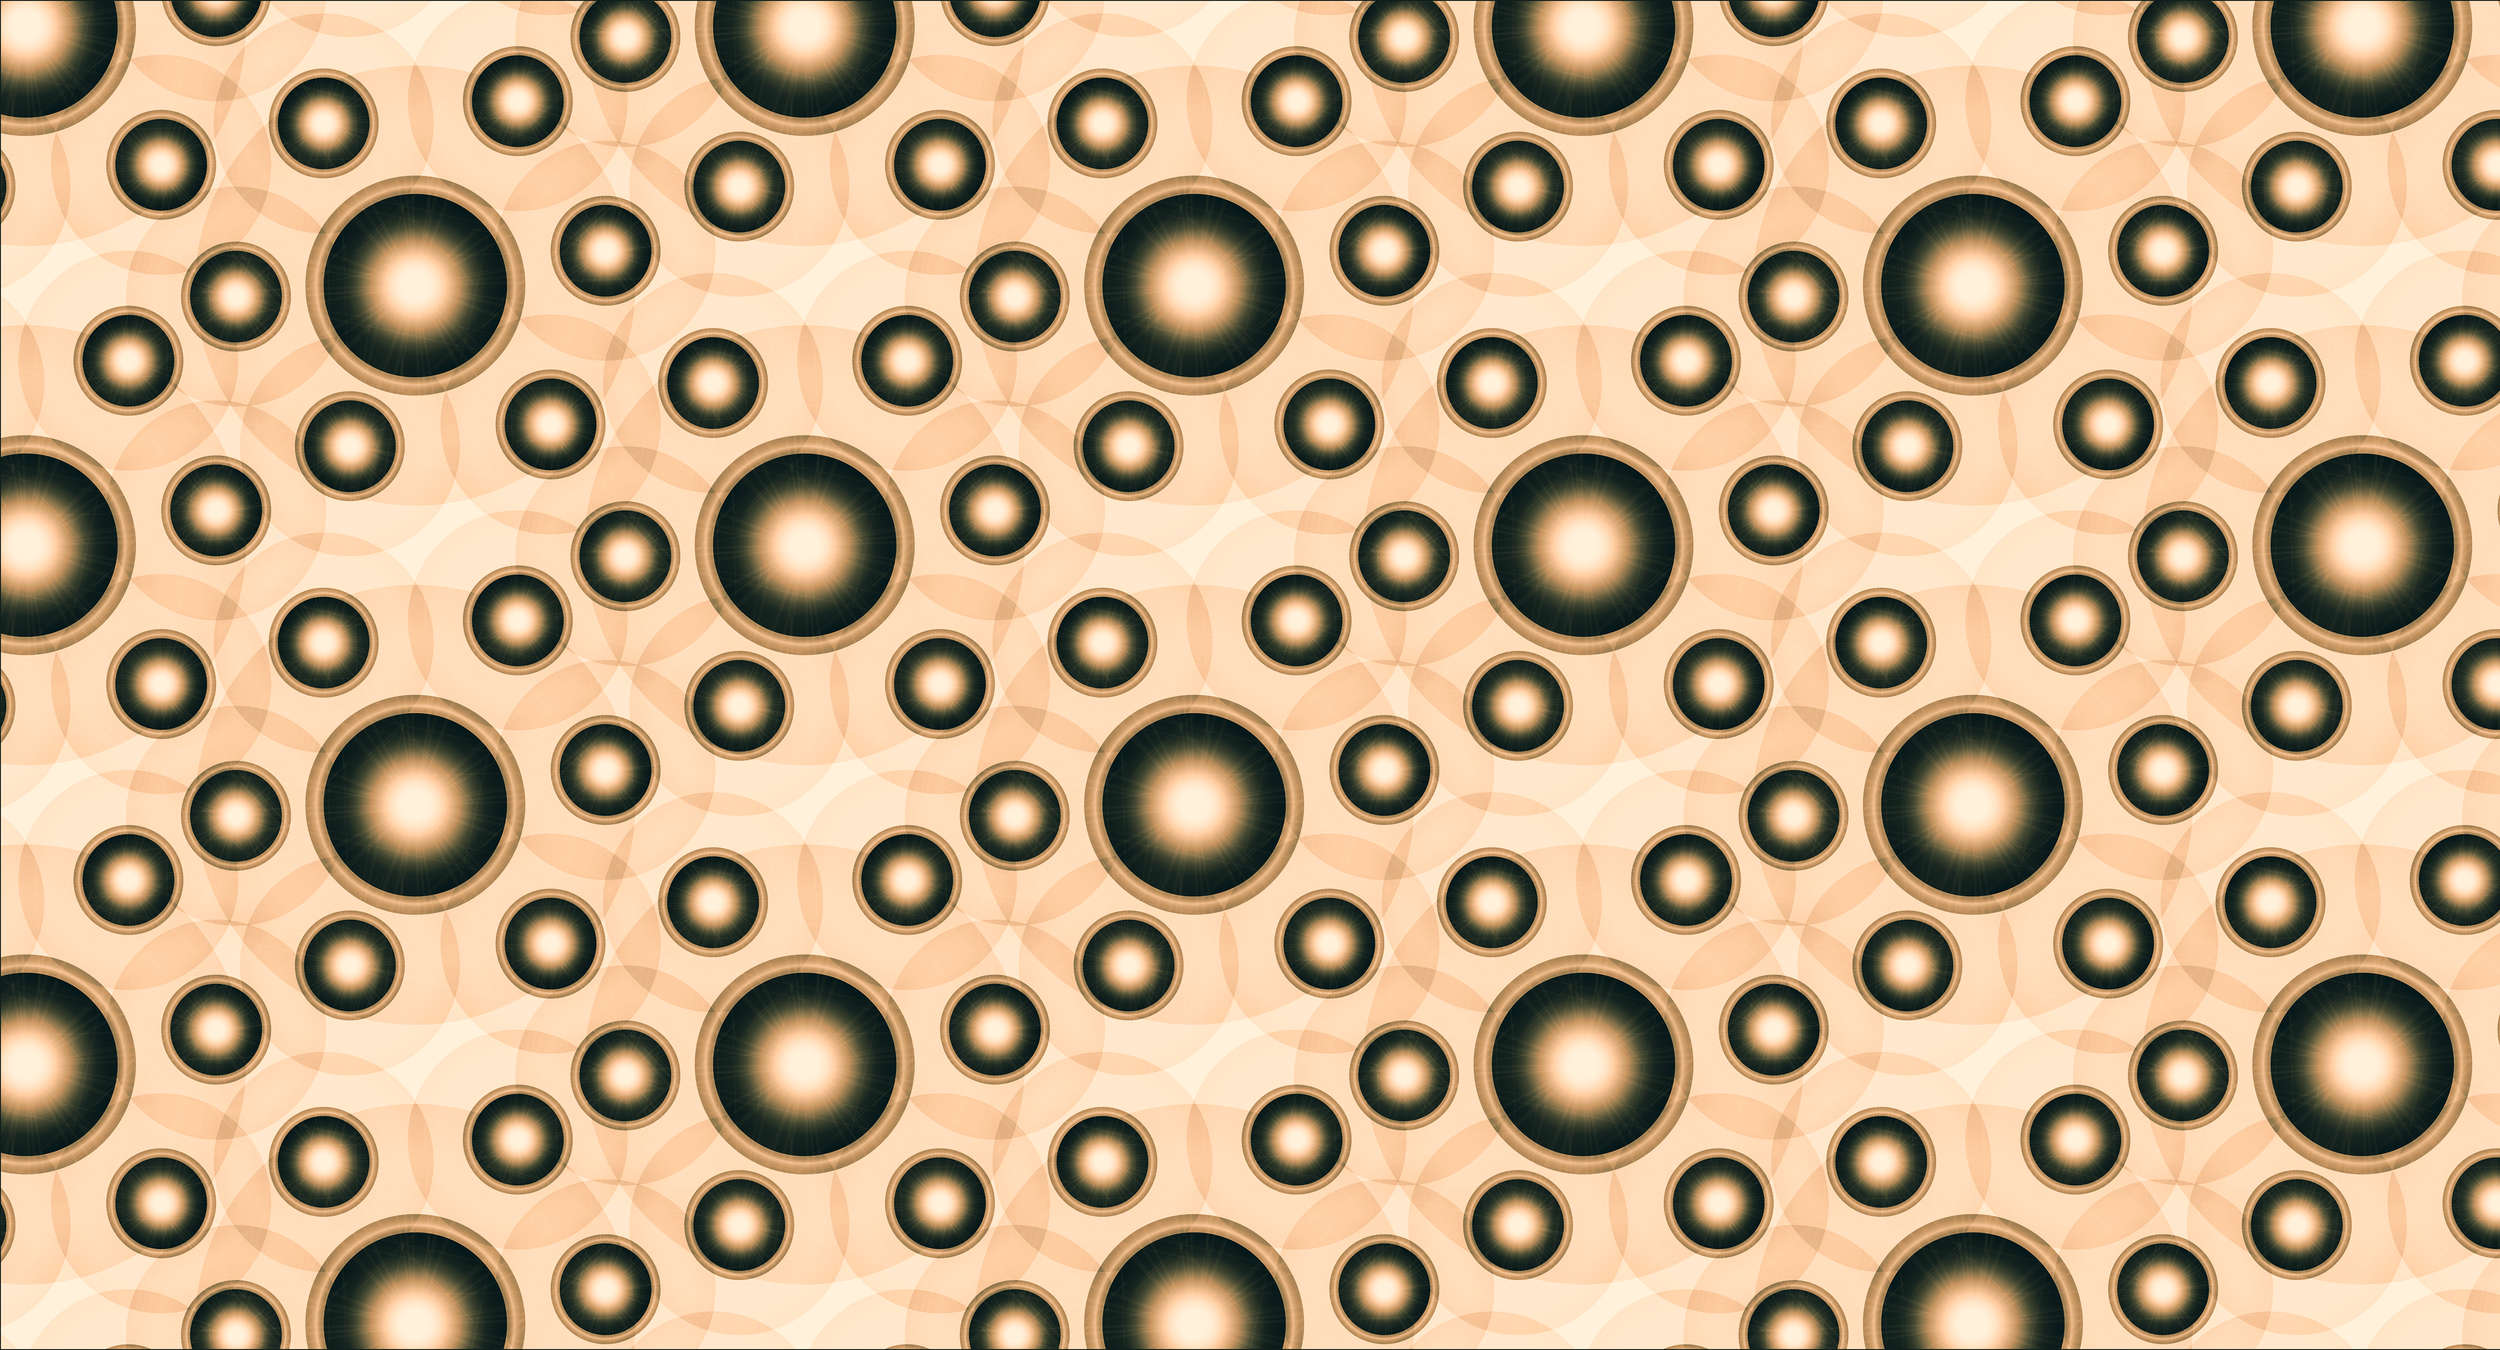             Fotomurali con cerchi e punti in 3D - arancione, bianco, nero
        